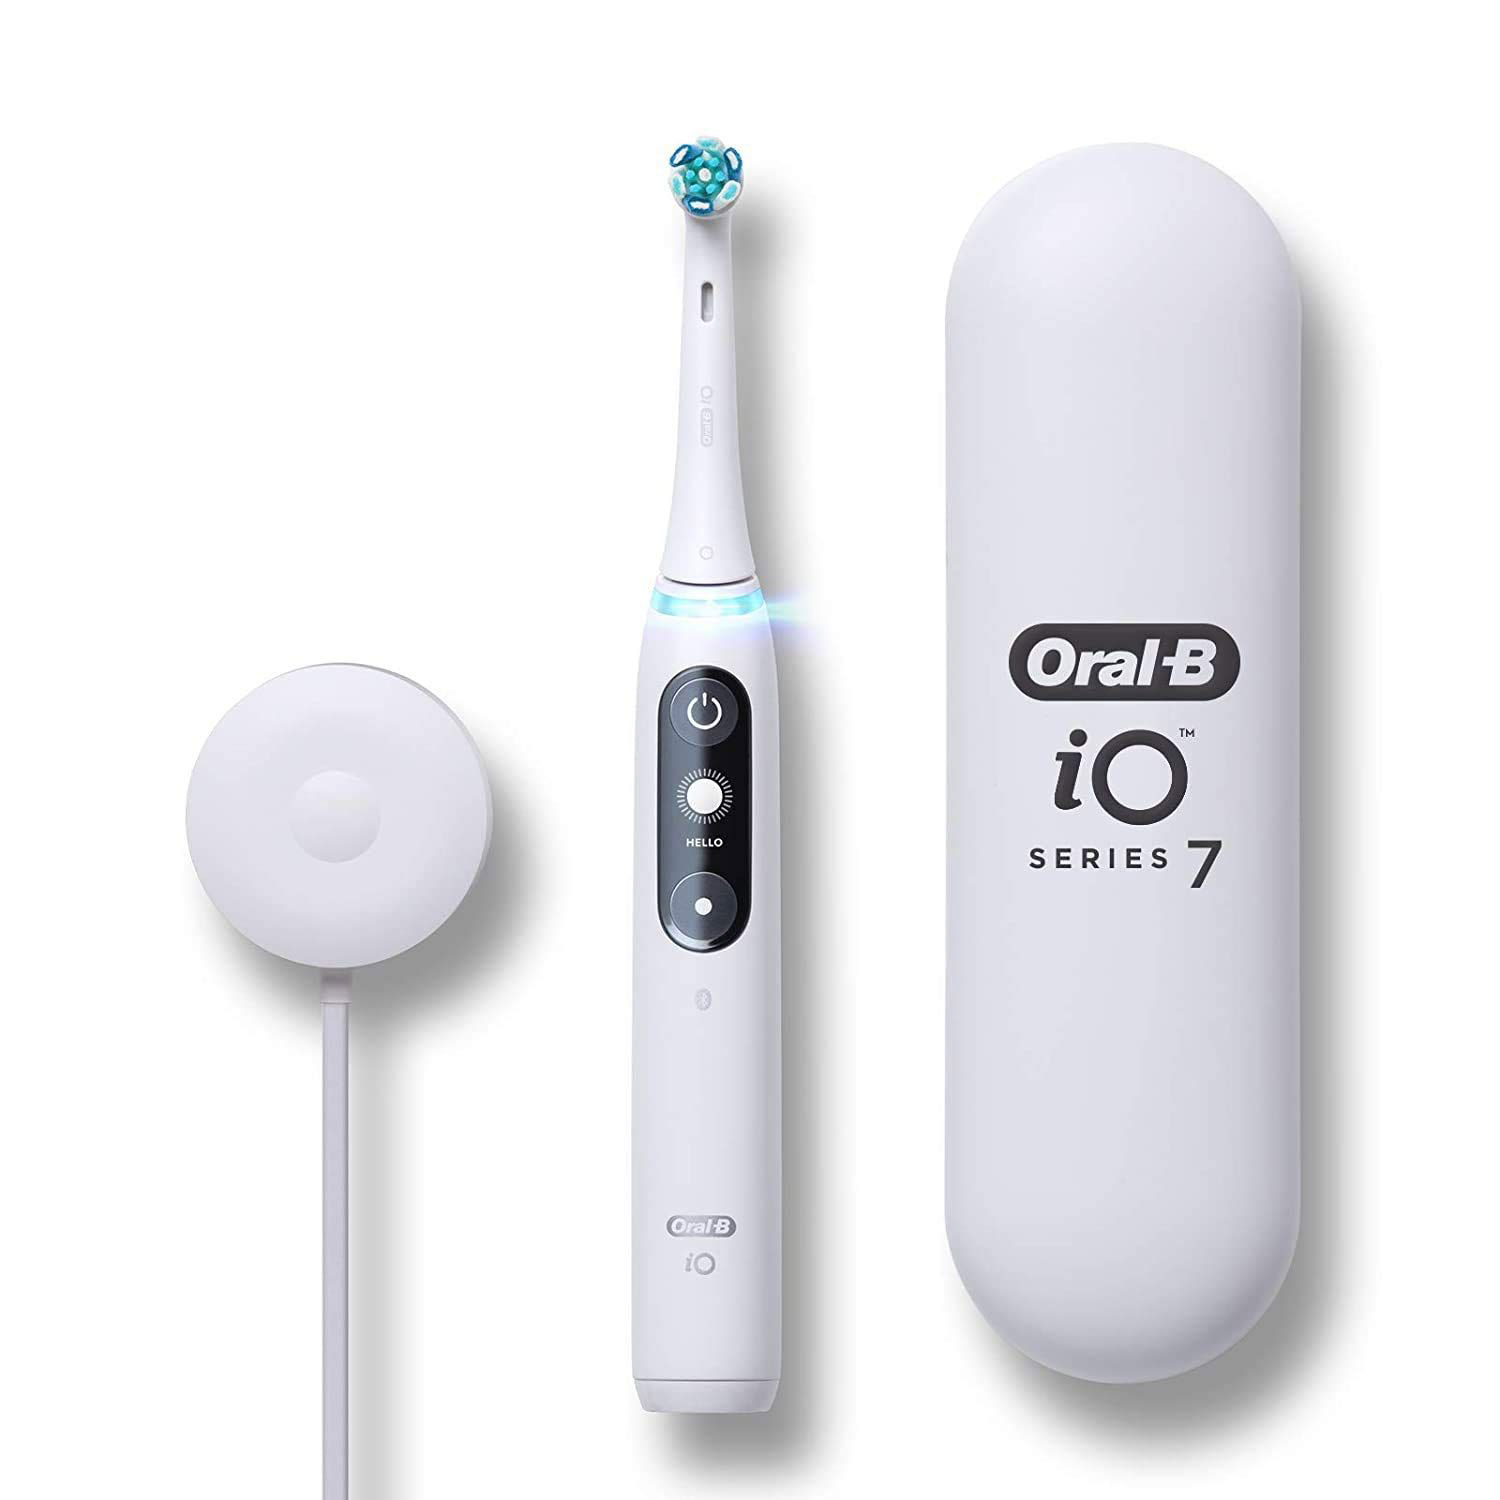 Bàn chải điện Oral-B iO Series 7: Bàn chải điện Oral-B iO Series 7 là sự lựa chọn tốt nhất cho sức khỏe răng miệng của bạn. Với công nghệ trí tuệ nhân tạo, hệ thống làm sạch hiện đại và khả năng kết nối Bluetooth, bạn sẽ có một trải nghiệm làm sạch răng độc đáo, tạo cho bạn một nụ cười rạng rỡ hơn.